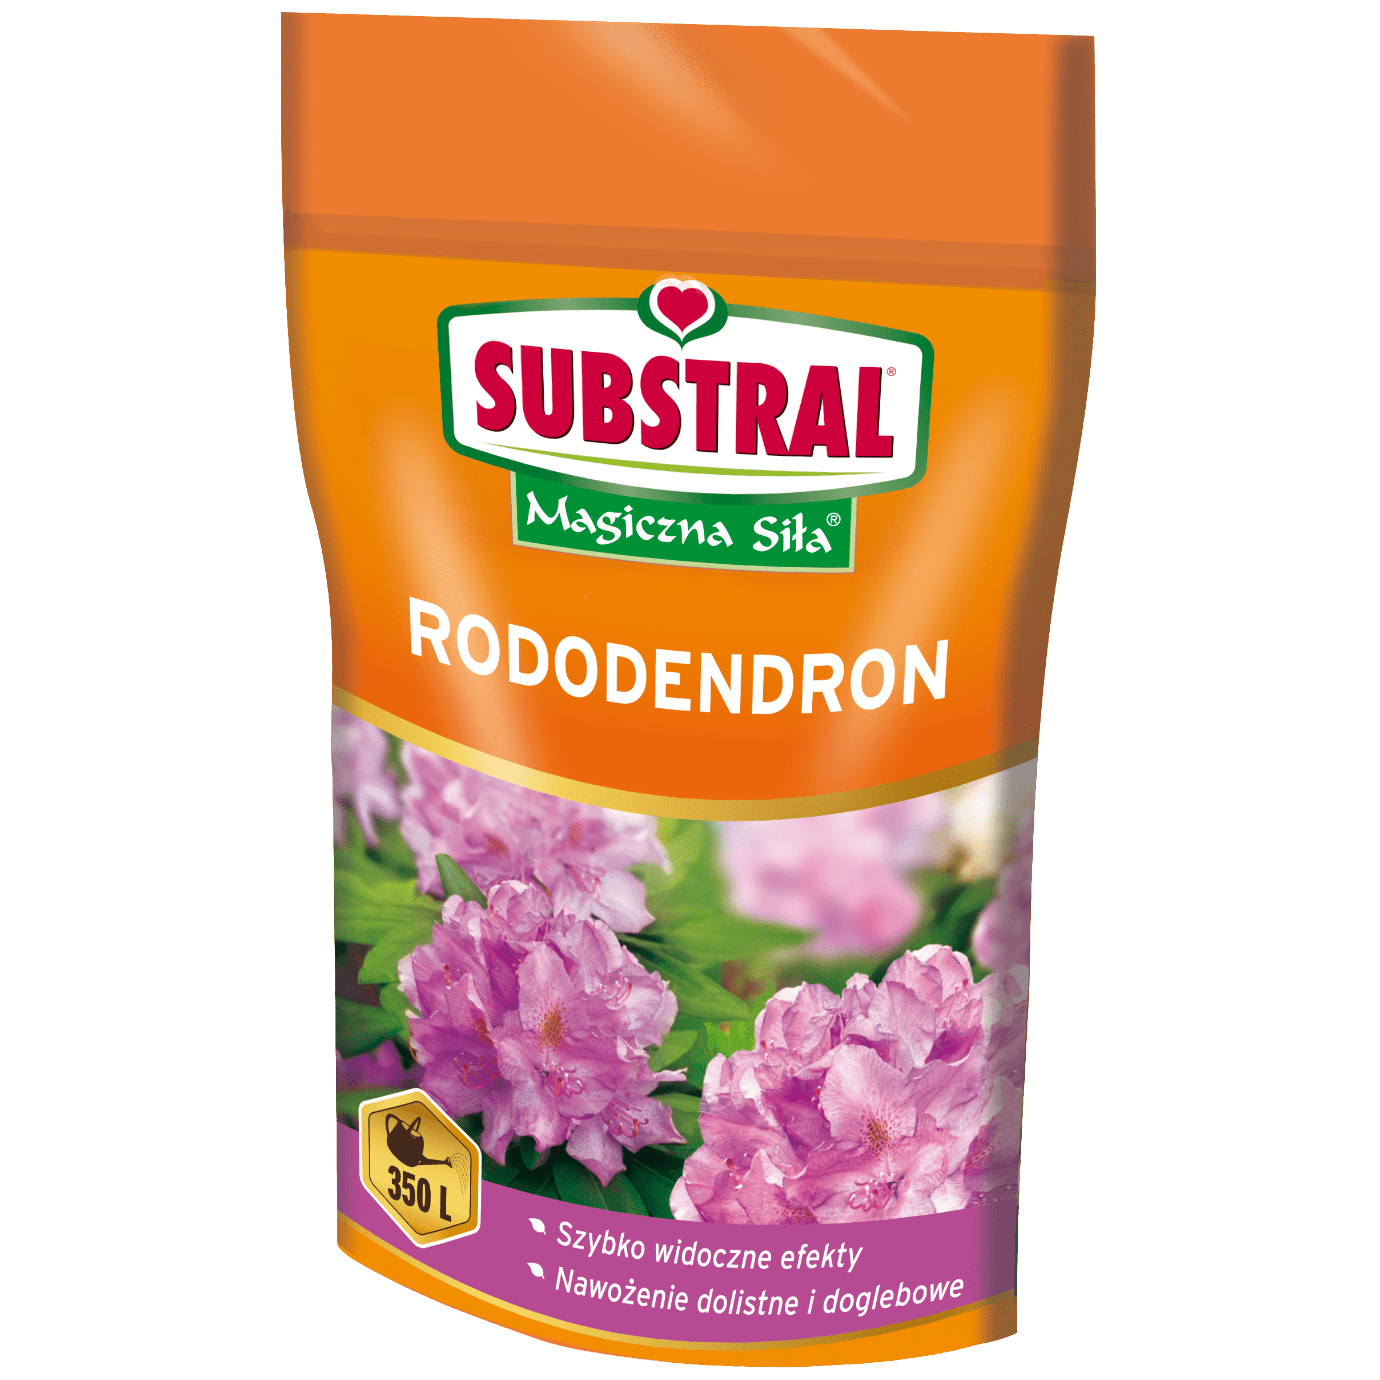  Substral Magiczna siła nawóz rozpuszczalny do rododendronów 350g